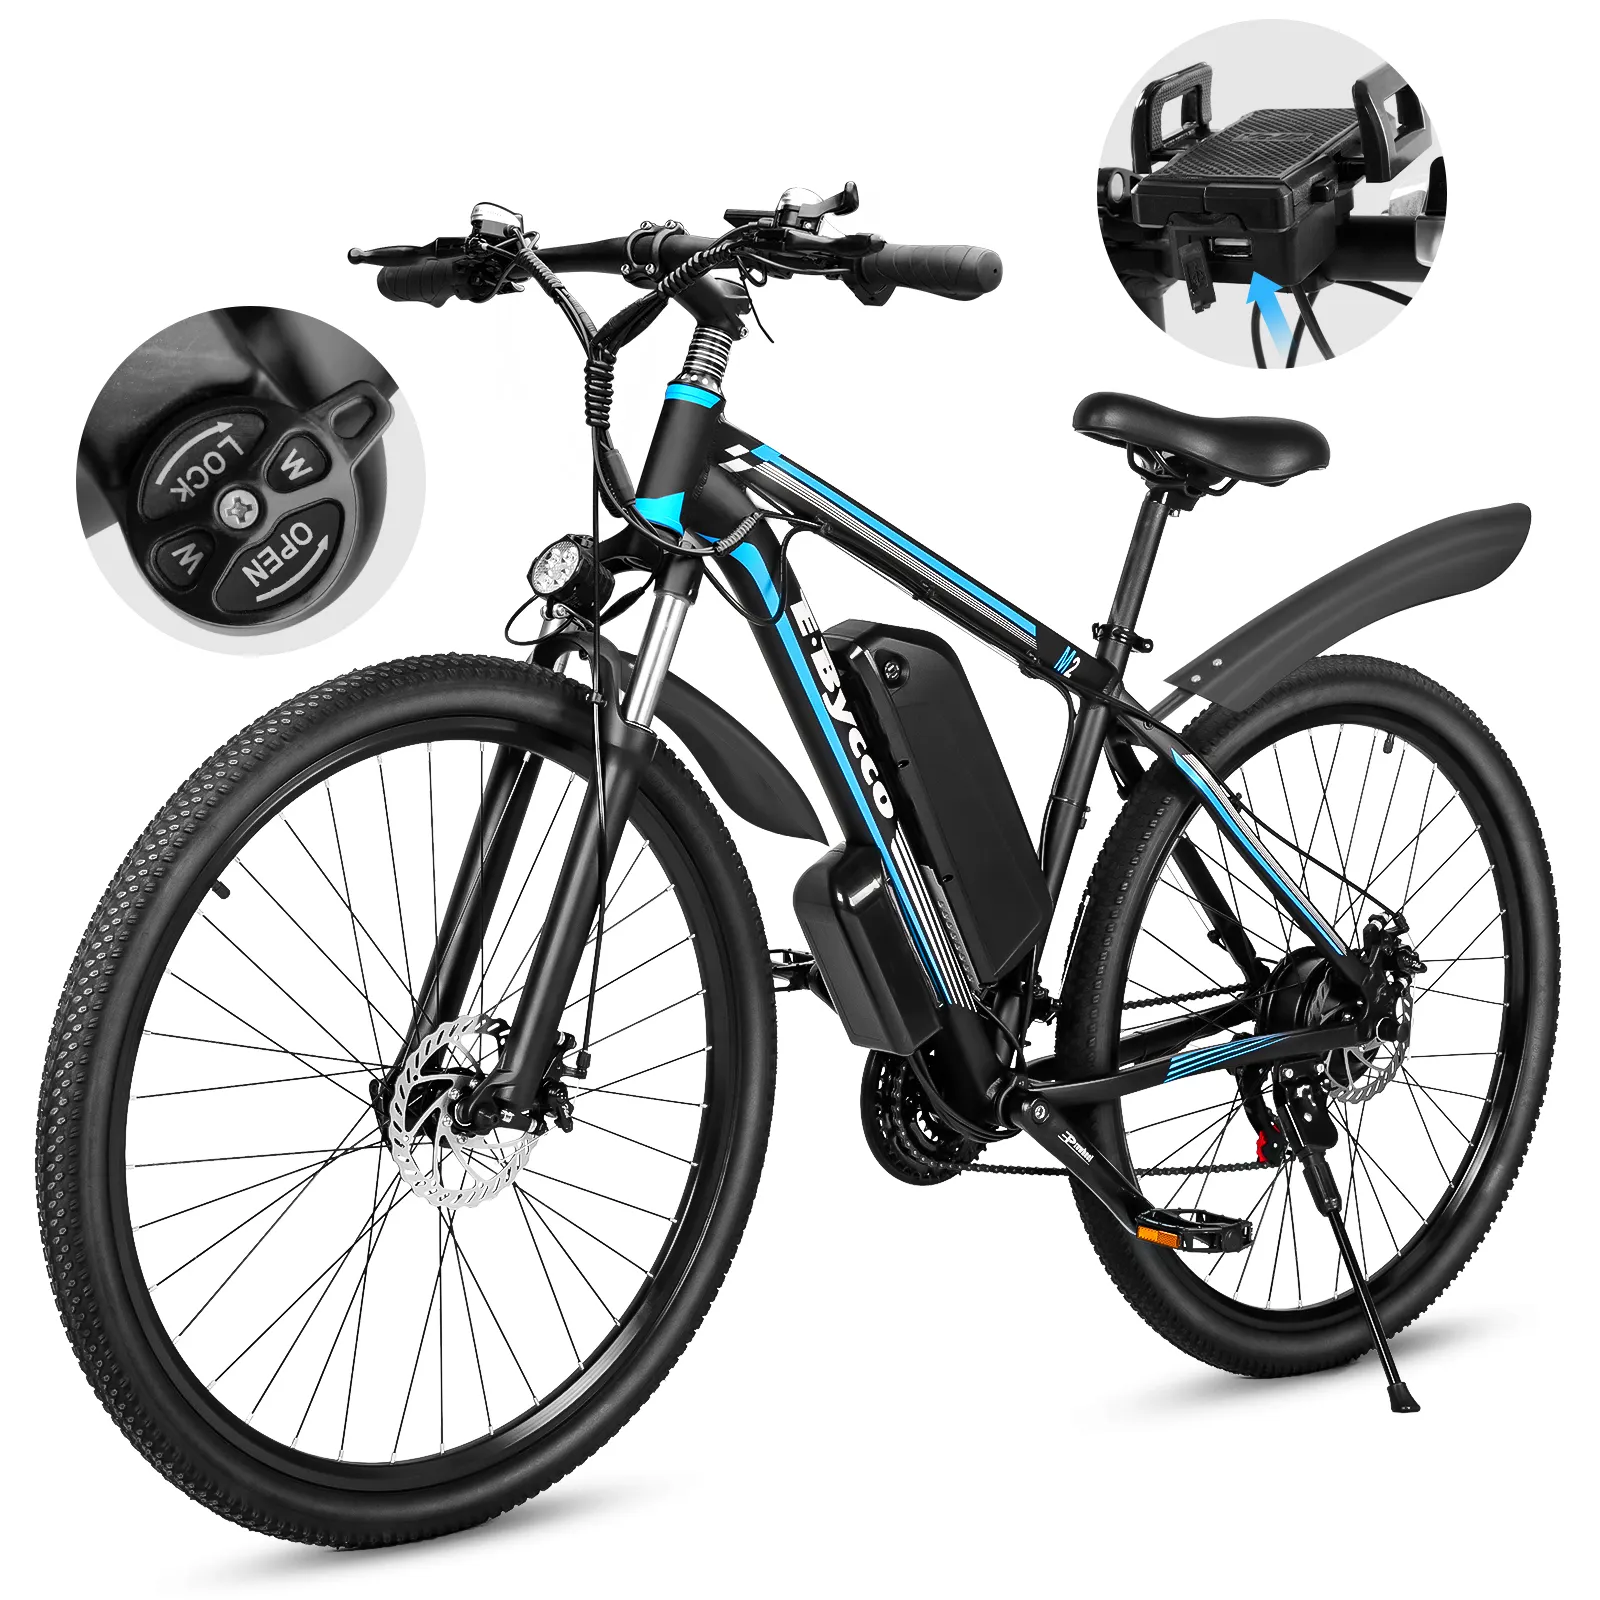 미국 EU 창고 재고 있음 저렴한 전기 자전거 750w 레이싱 전기 자전거 도시 전자 자전거 Removeable 배터리 스포츠 산악 ebike